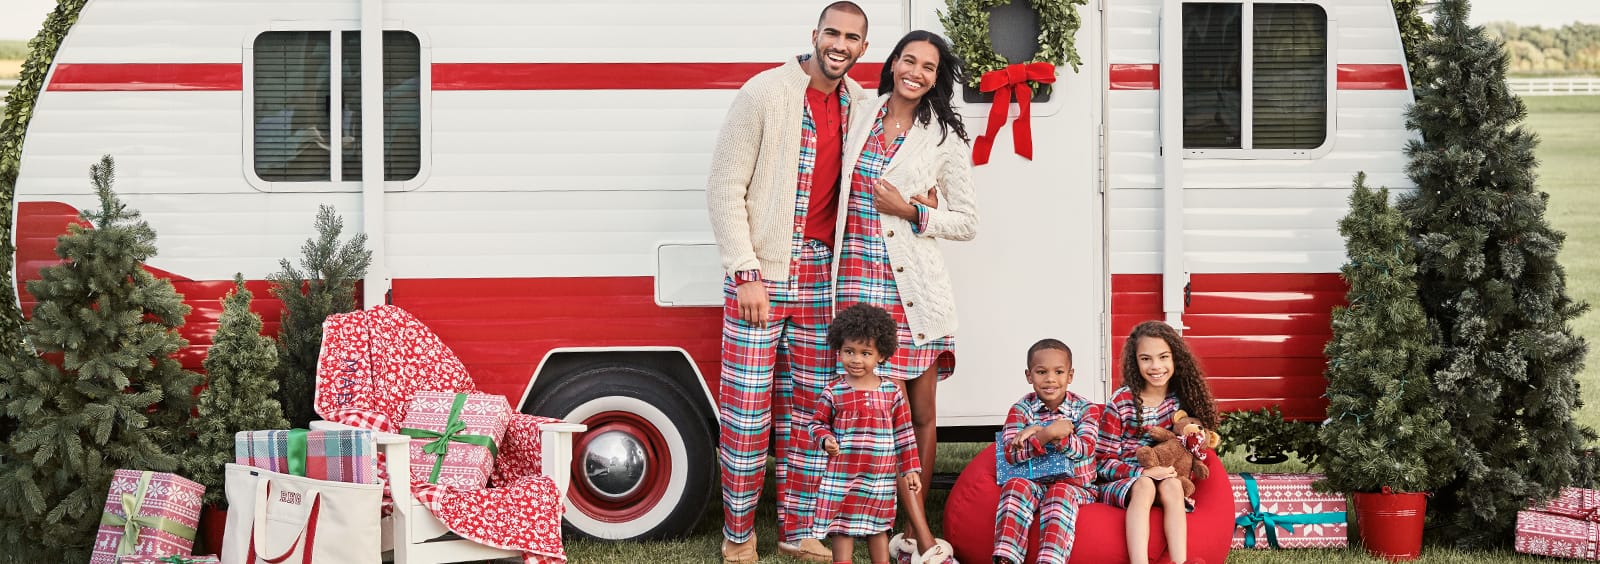 Passende Familienpyjamas, die Sie in dieser Weihnachtszeit unbedingt brauchen 